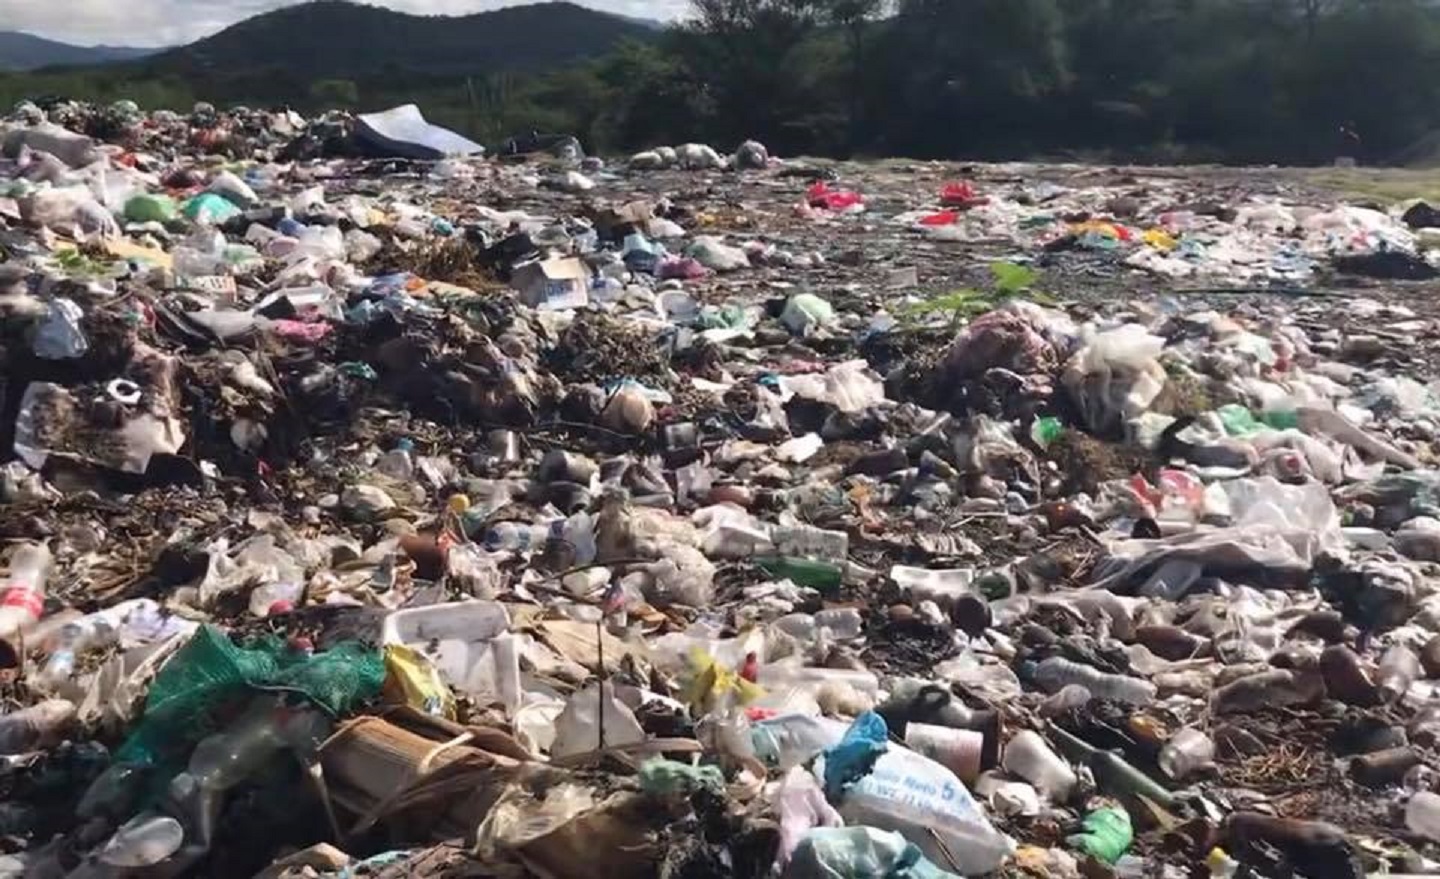 Tiradero de basura afecta a 80 familias en Cuatecontla